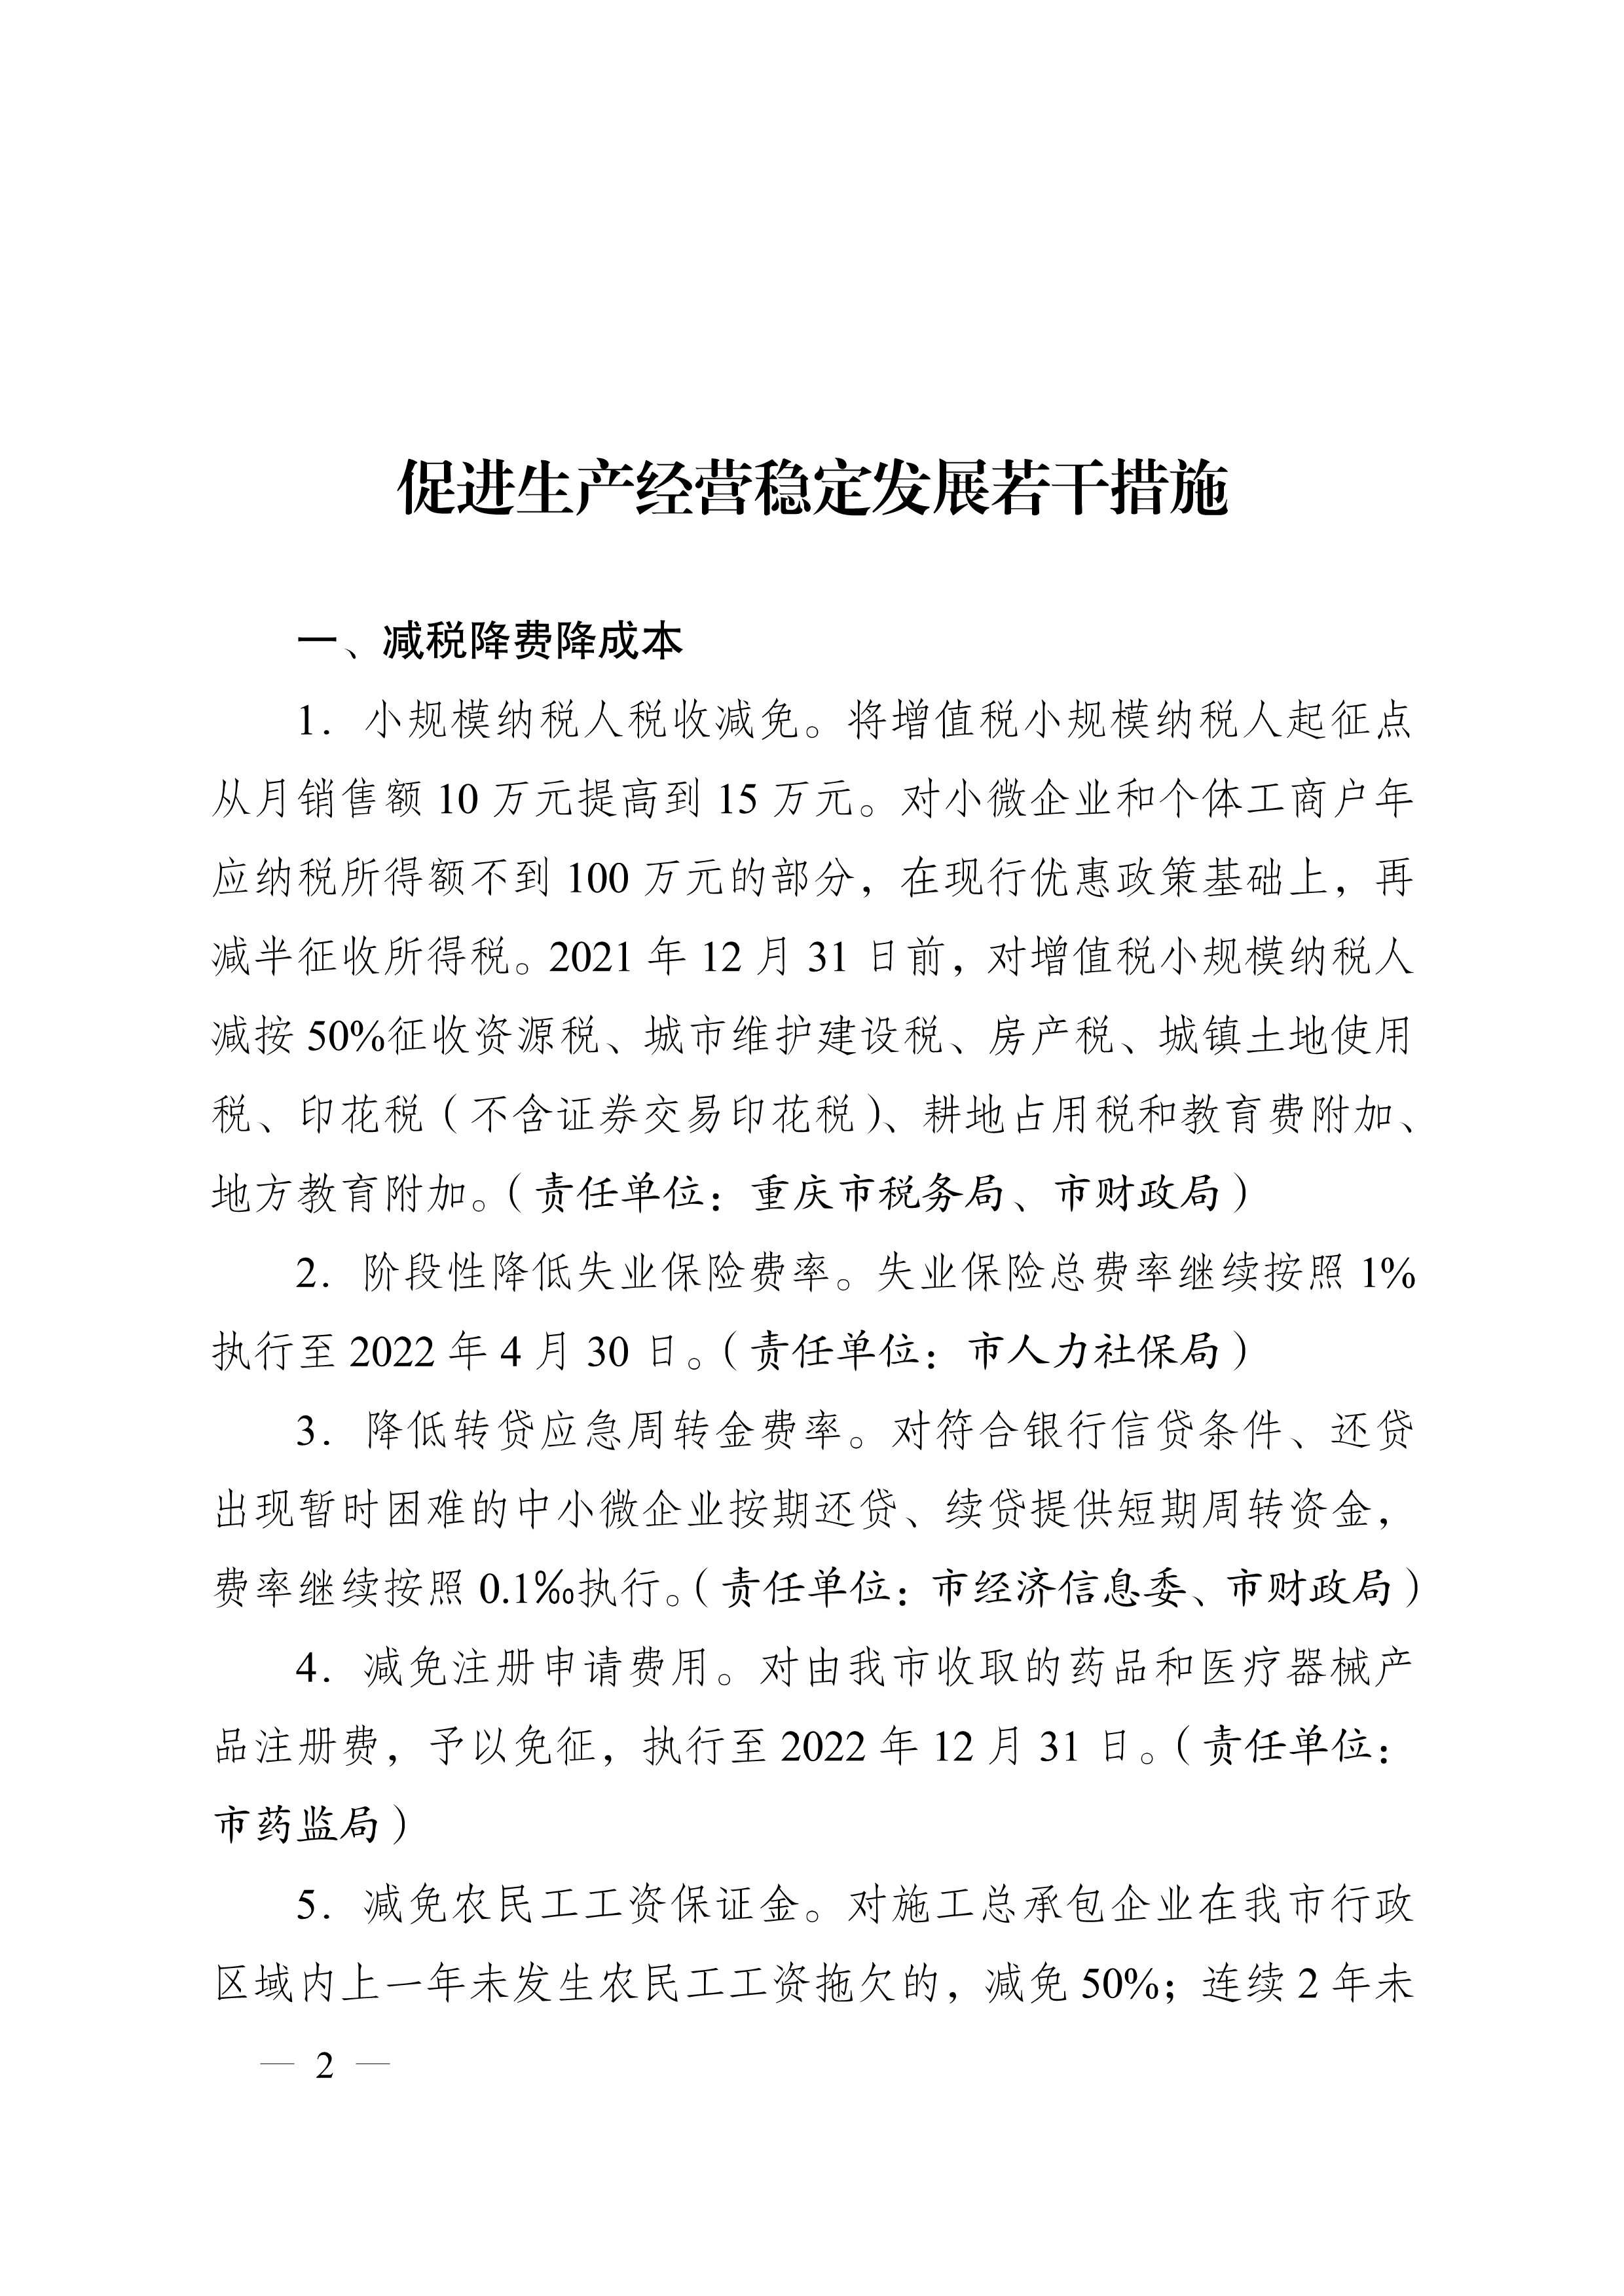 重庆市人民政府办公厅关于促进生产经营稳定发展若干措施的通知(图2)